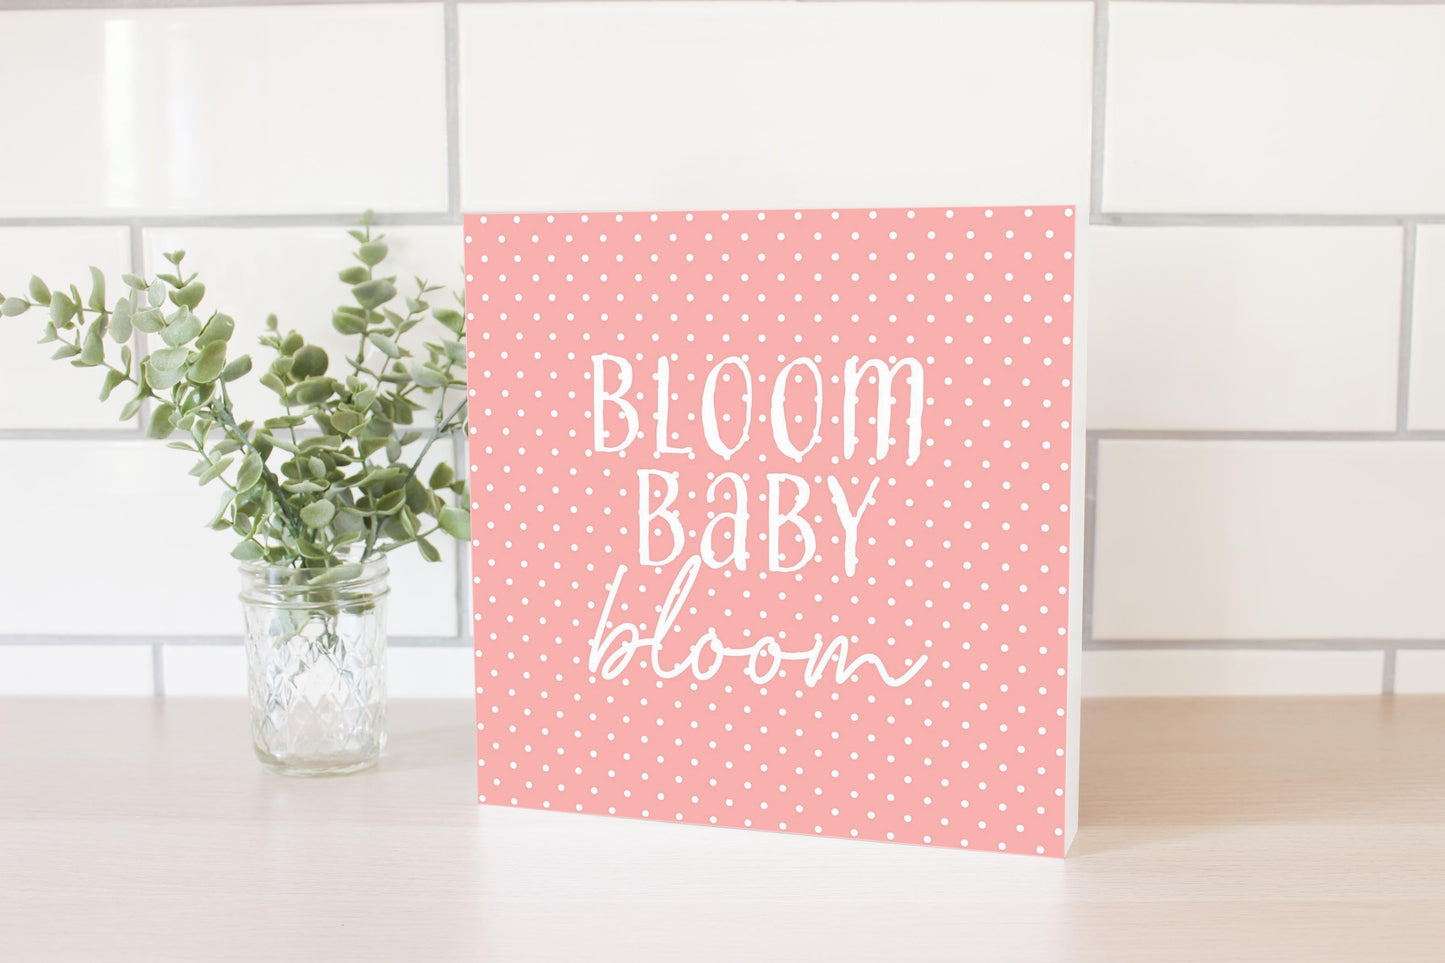 Spring Pastel Bloom Baby Bloom | 10x10